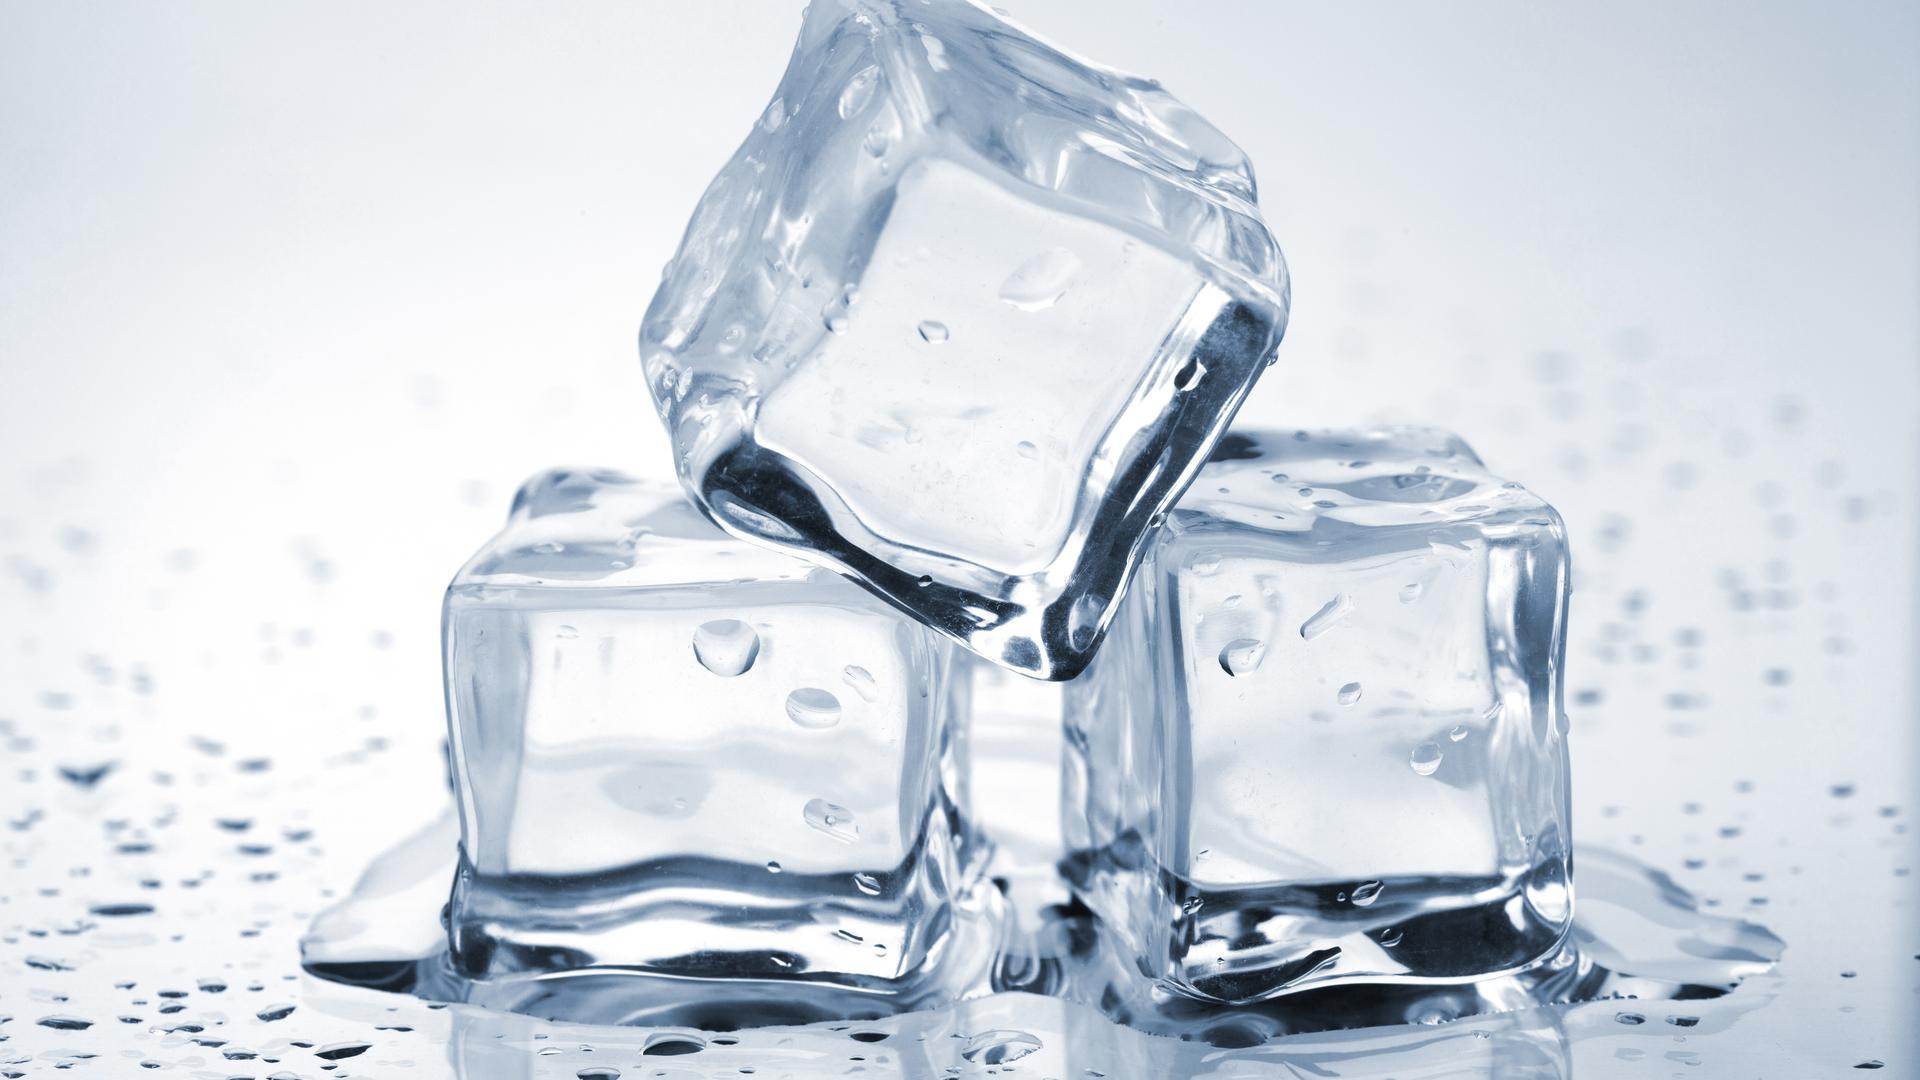 Grâce à de petites astuces, il est possible d’empêcher la glace de fondre trop rapidement. © Evgeny Karandaev, Shutterstock